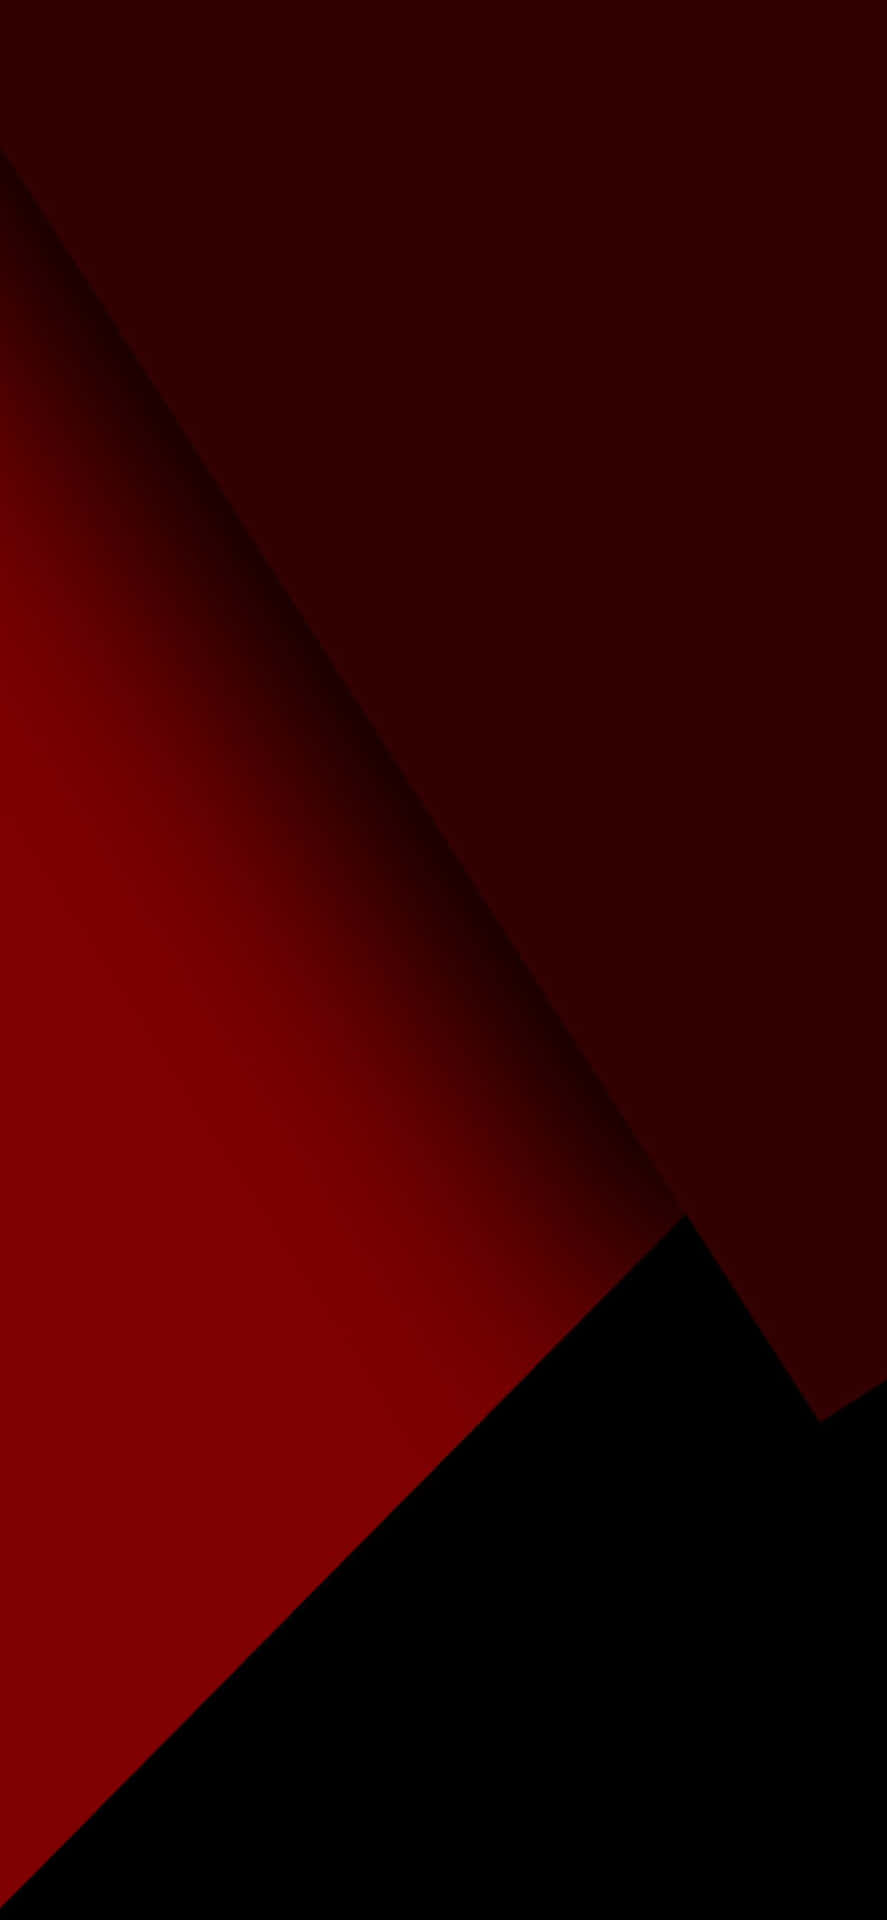 Unacombinación Audaz Y Llamativa: Iphone Negro Y Rojo. Fondo de pantalla